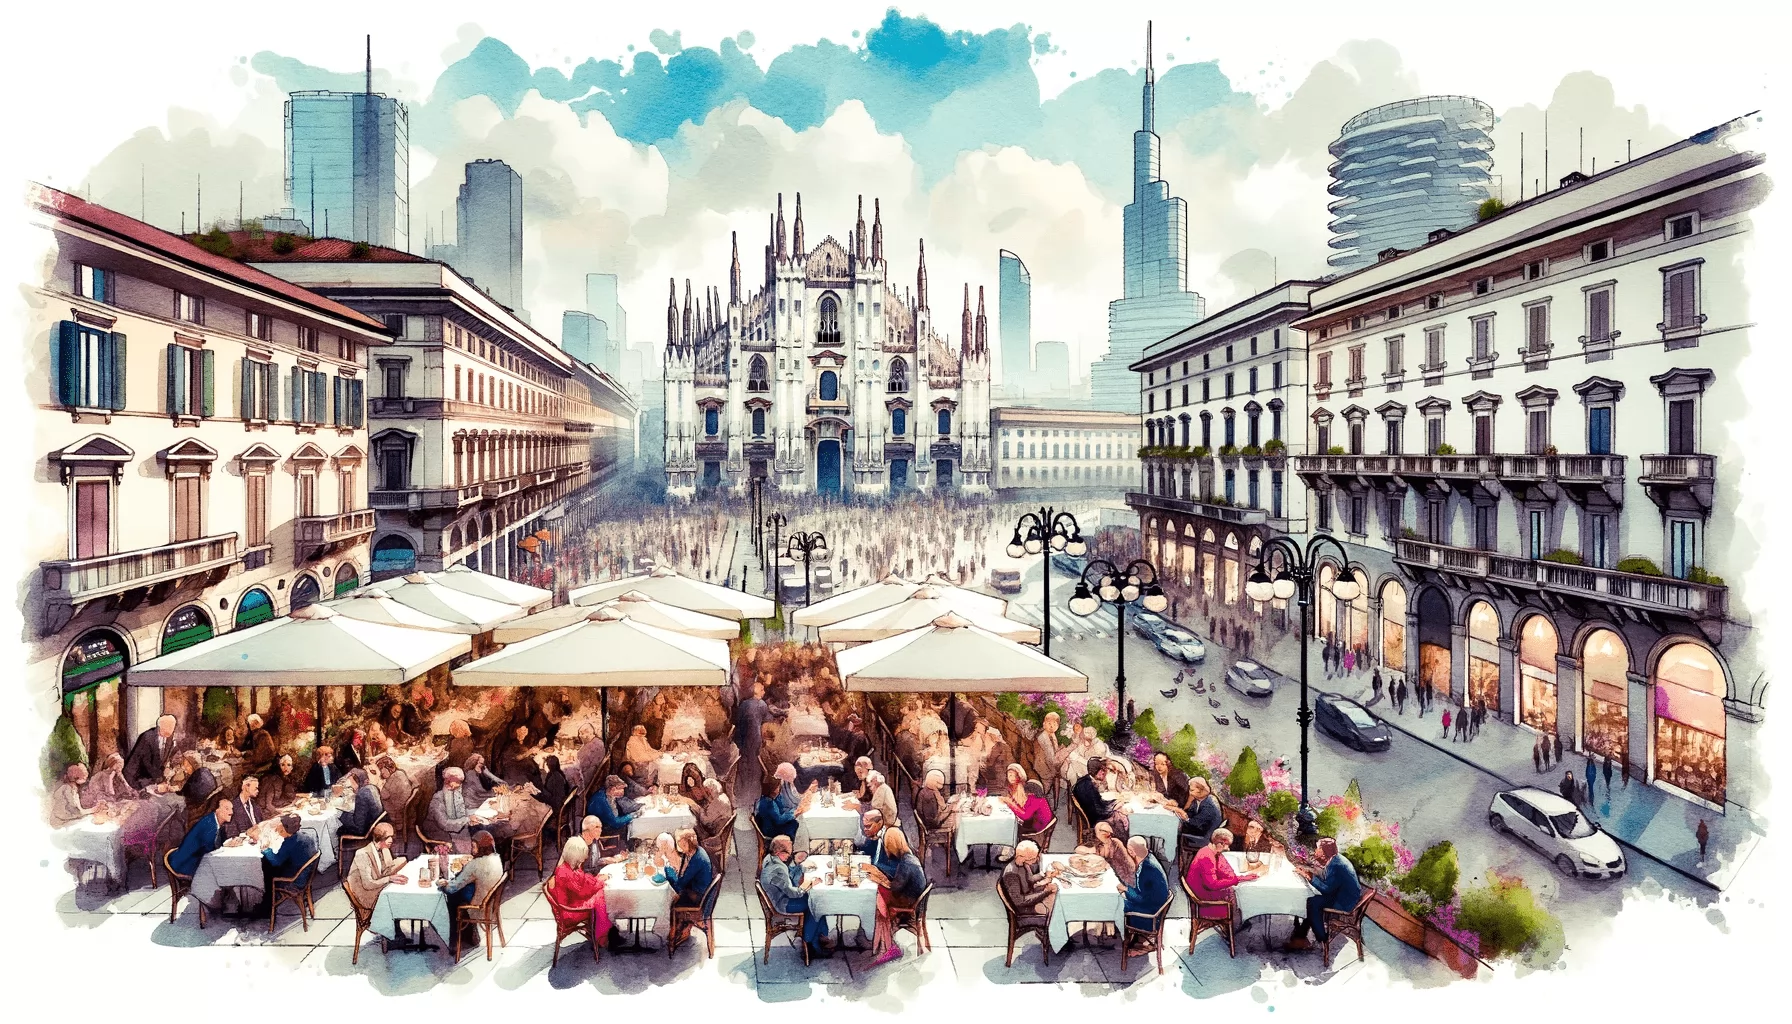 The restaurant market in Milan